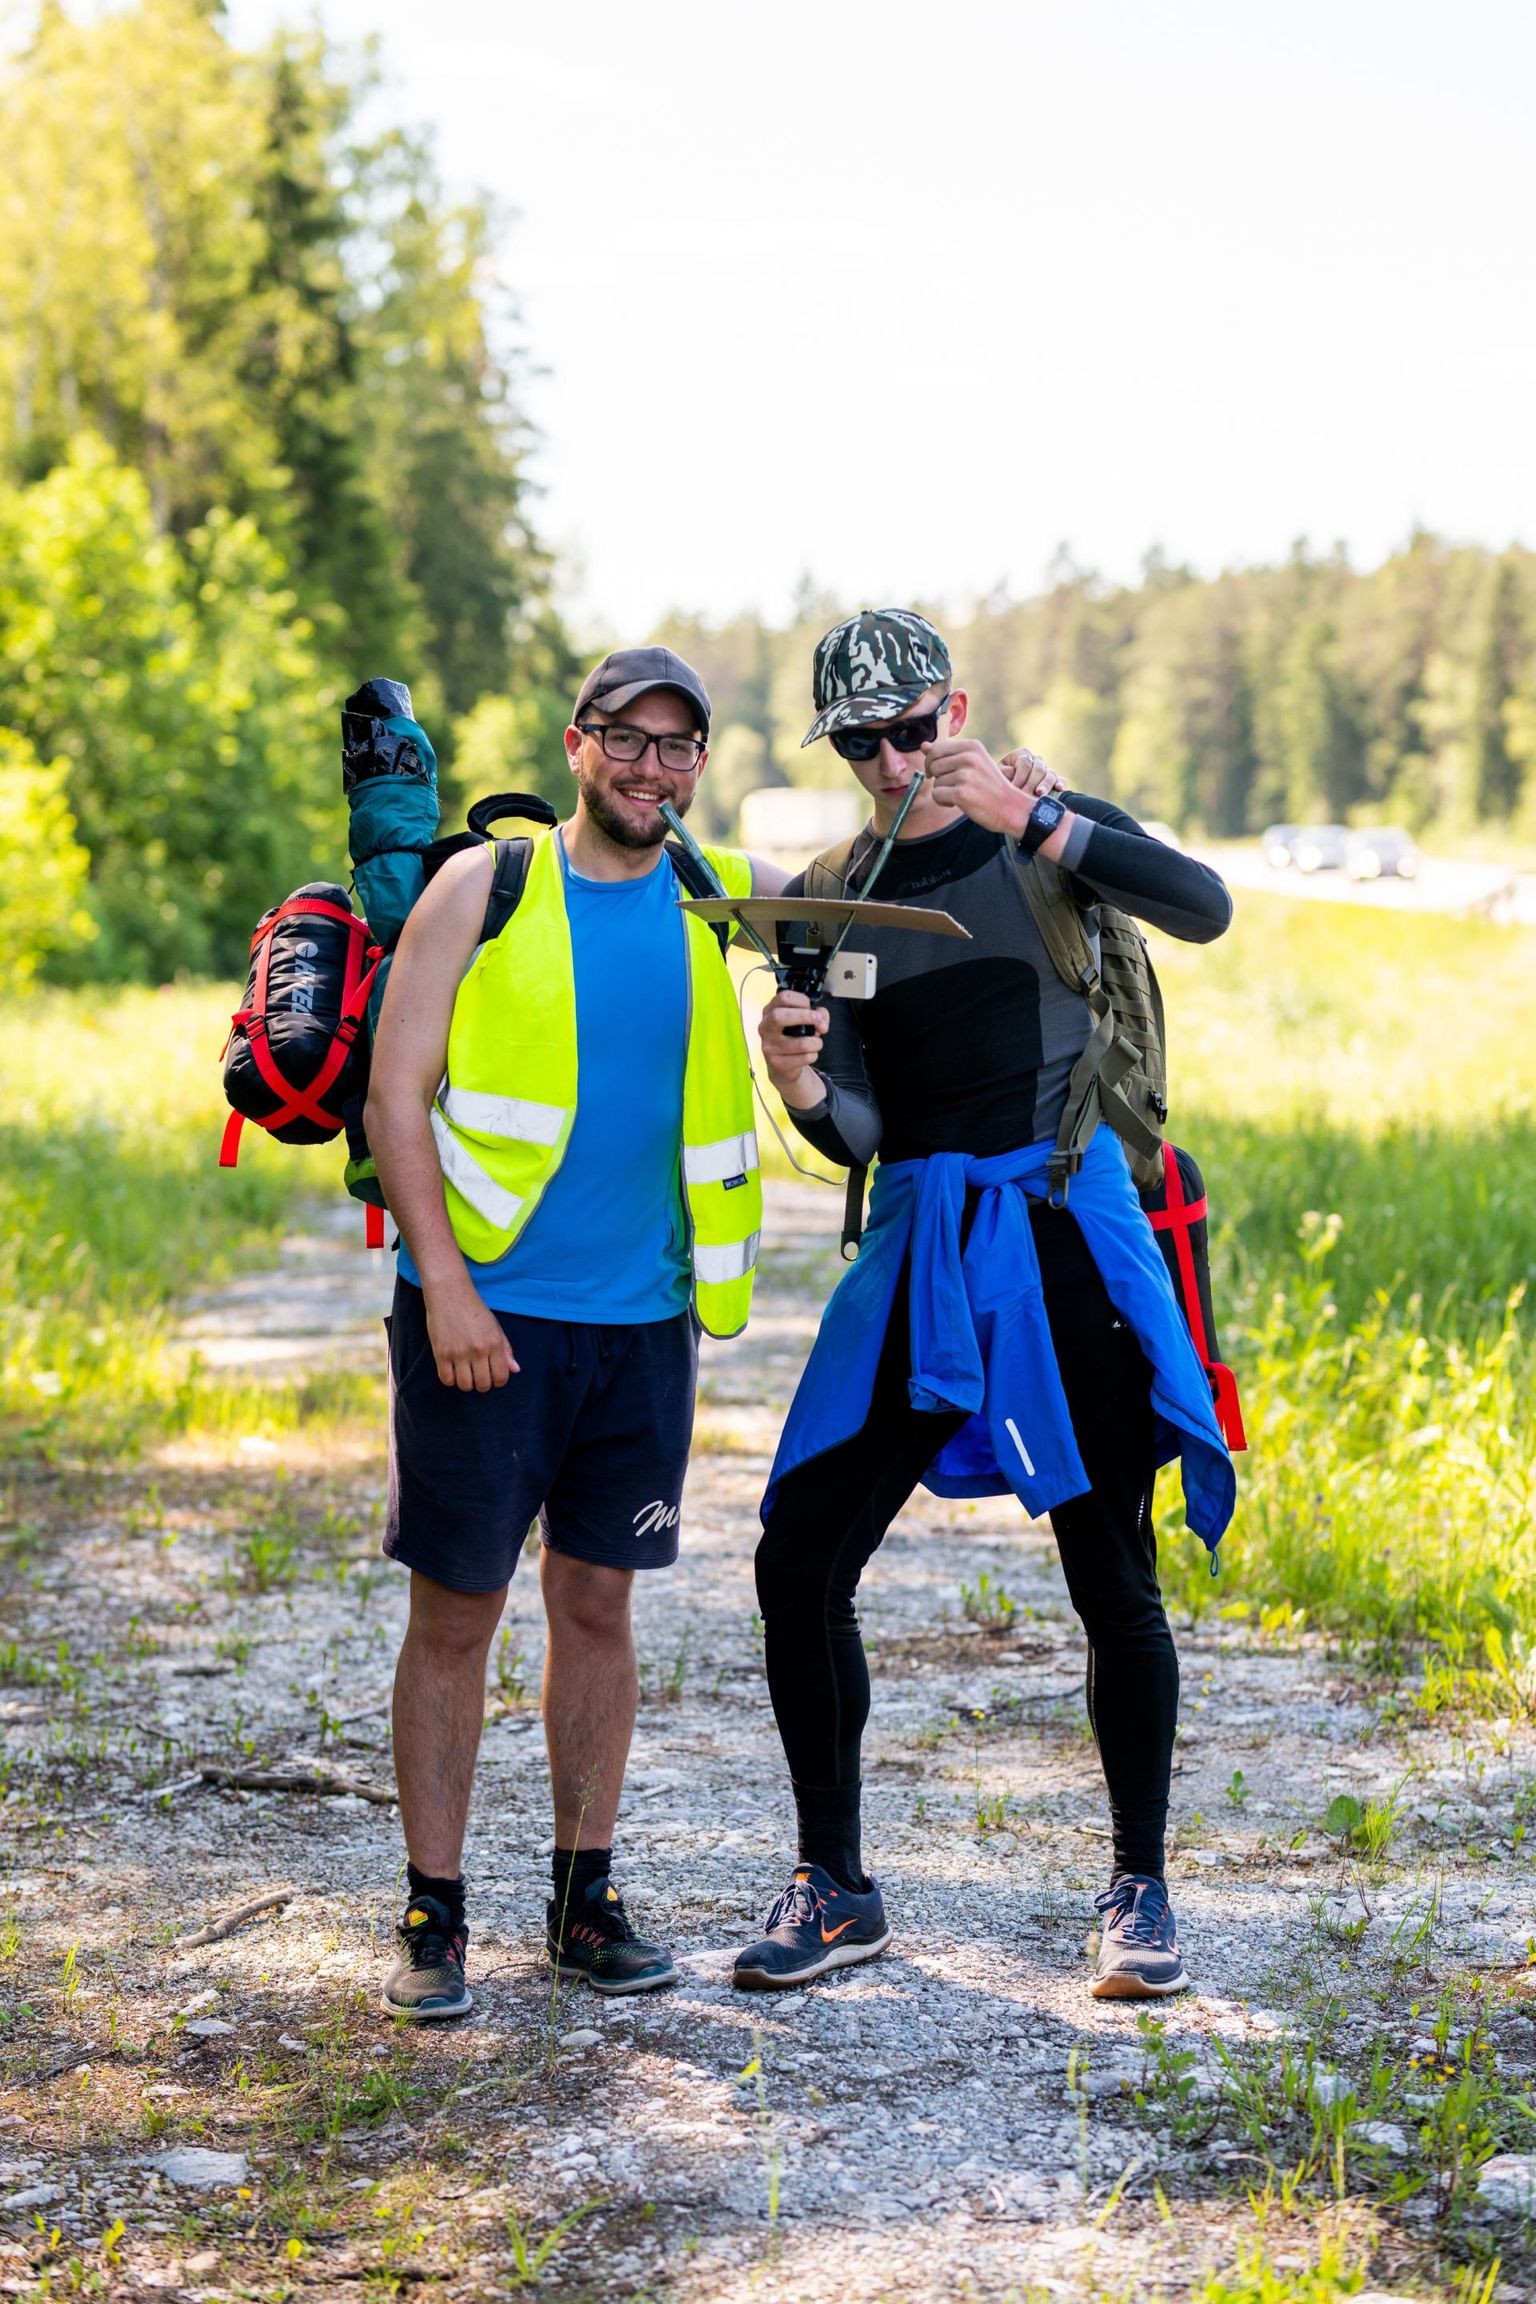 Ahjalt pärit noormehed Sander Kamenik (vasakul) ja Ranno Tamm kõndisid 55 tunniga Tartust Tallinna, tehes rännakust seejuures otseülekannet. Selle kaudu kogusid nad ka raha heategevuseks.